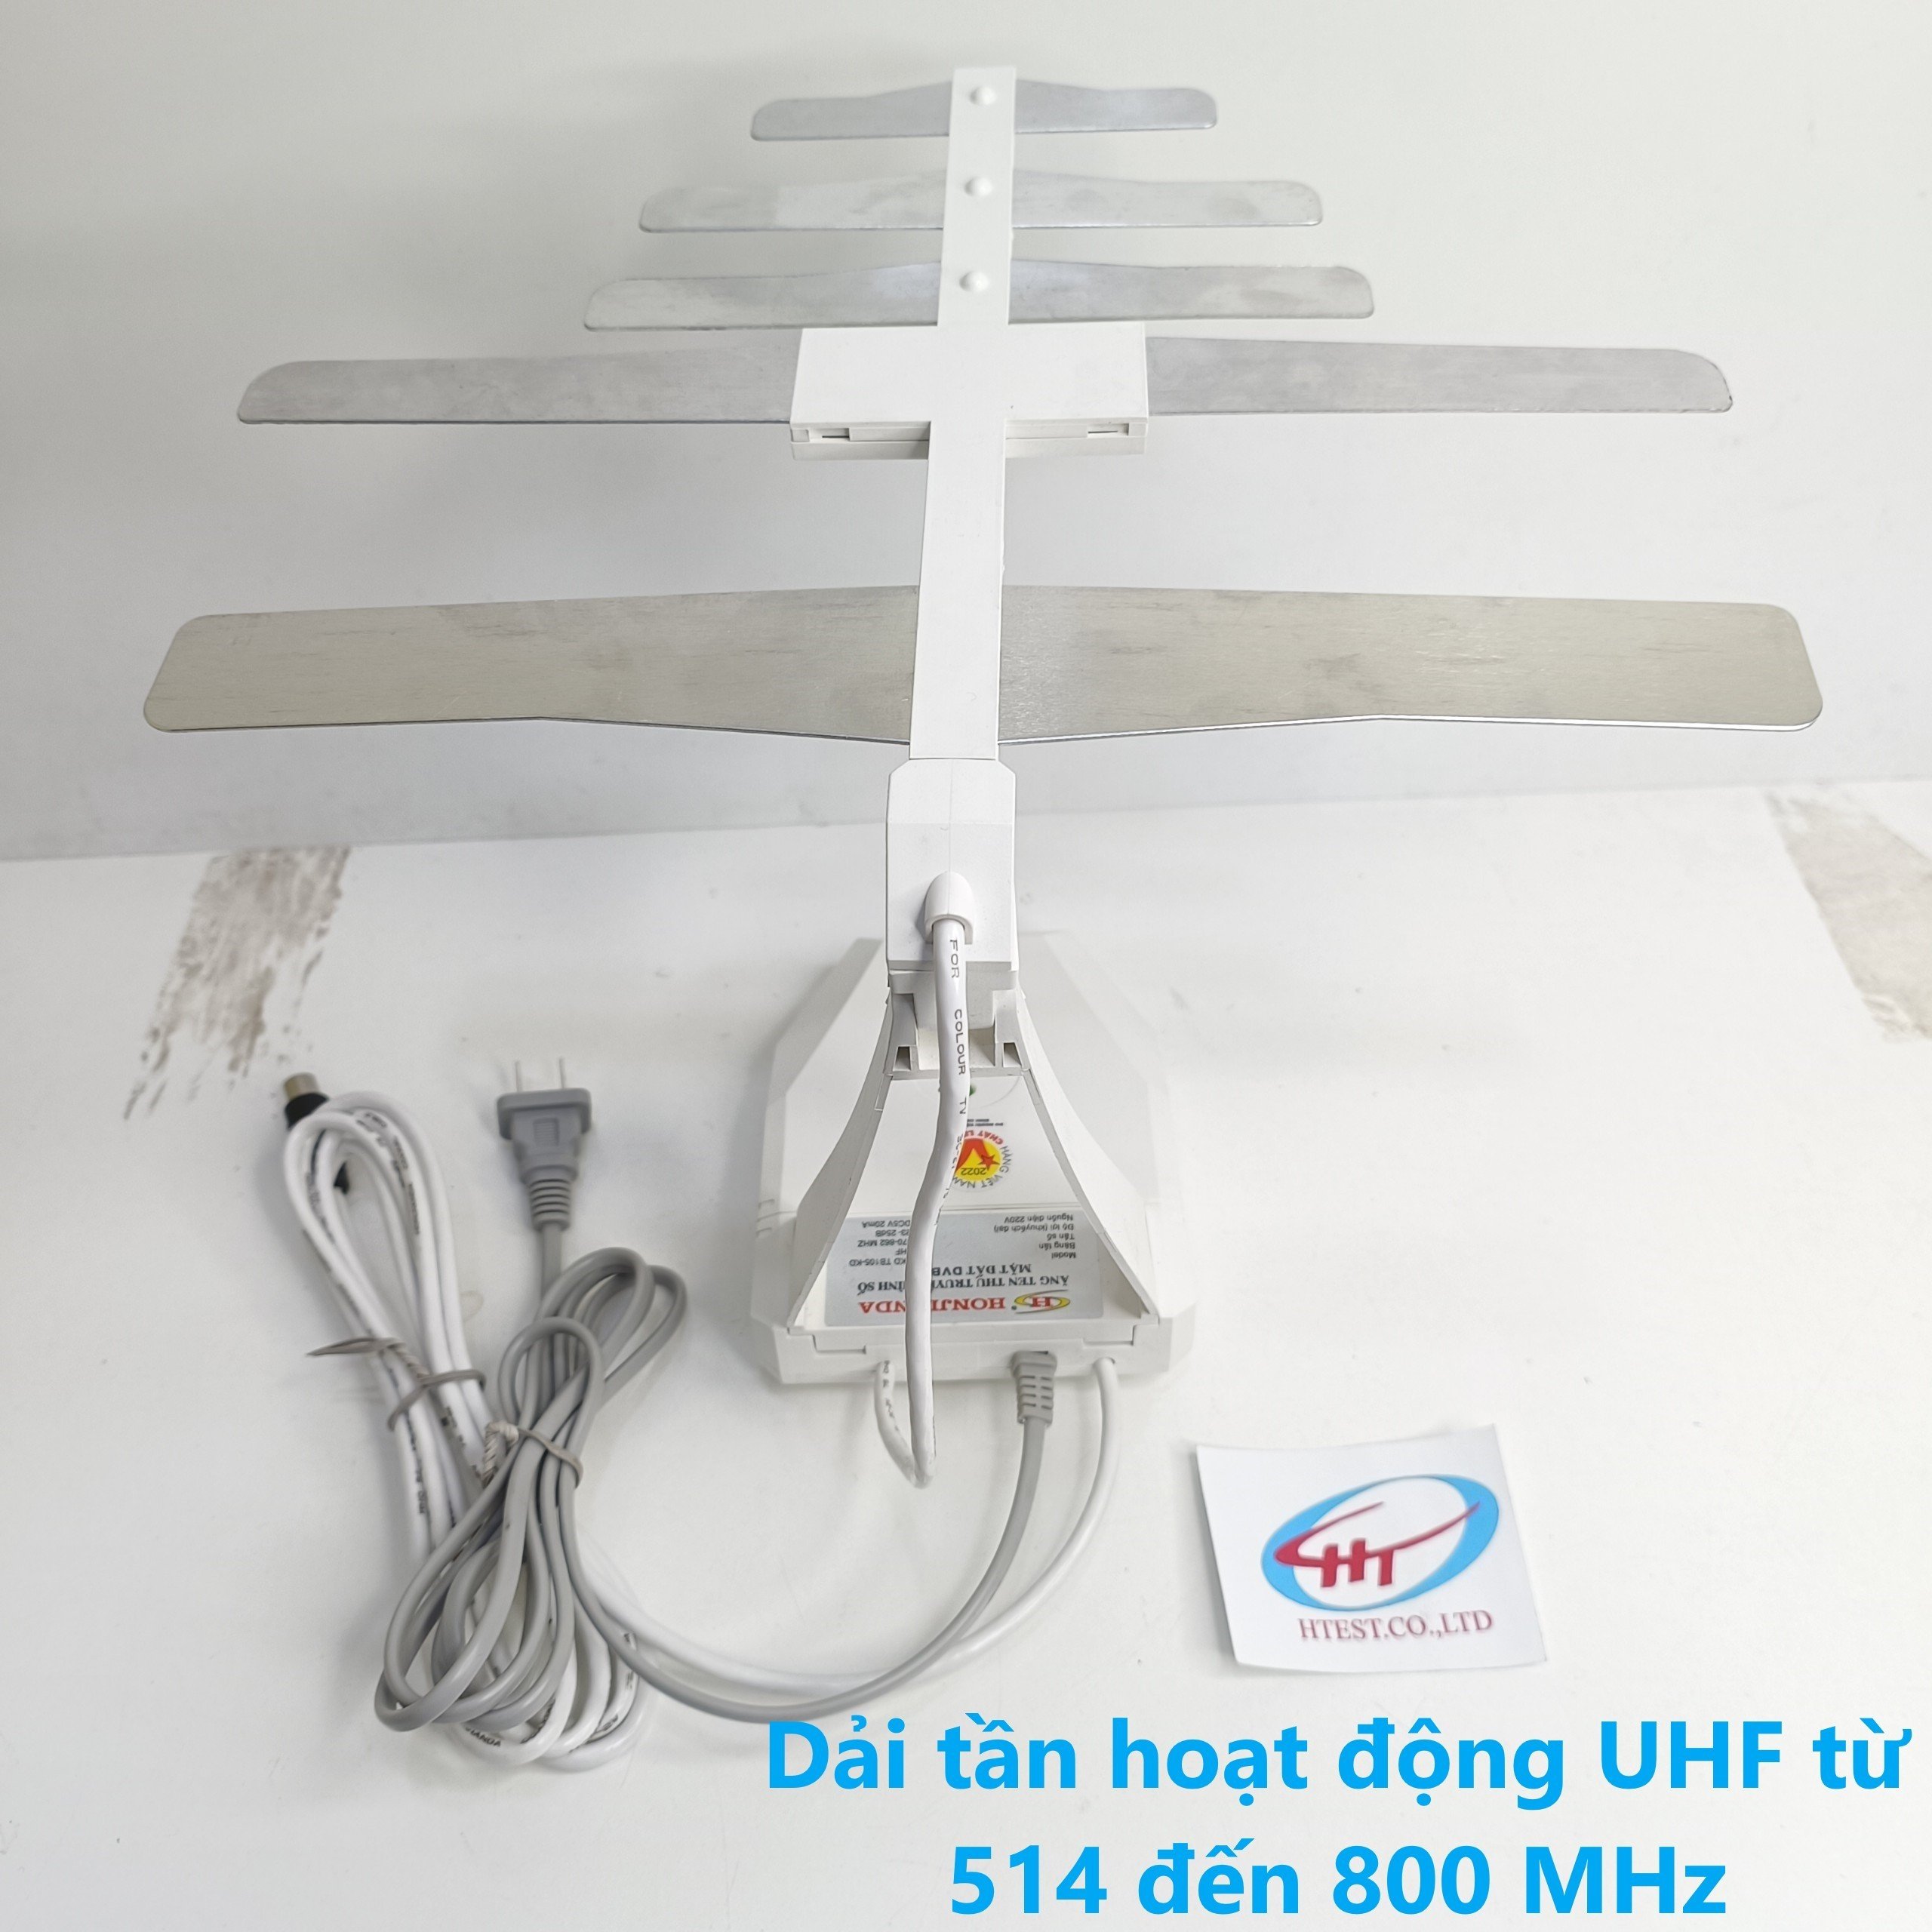 anten bàn HOÀNH KIẾN ĐẠT 105 cho chung cư cao tầng hoặc nhà gần trạm phát sóng DVB T2, Hàng Chính Hãng.